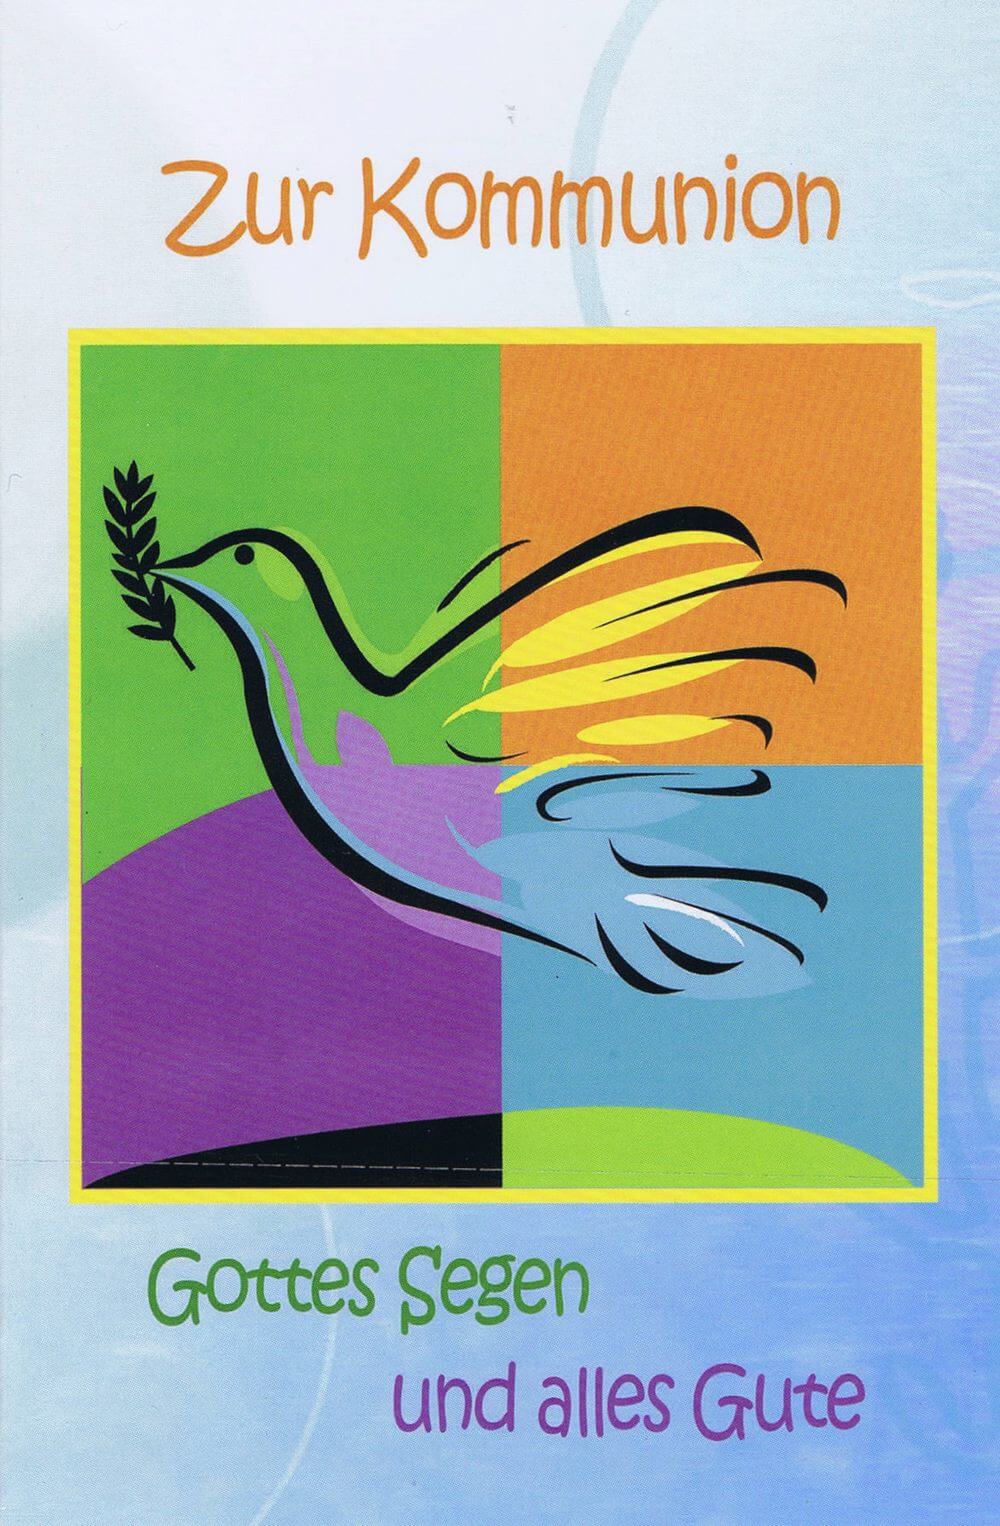 Glückwunschkarte zur Kommunion XKO111 Taube